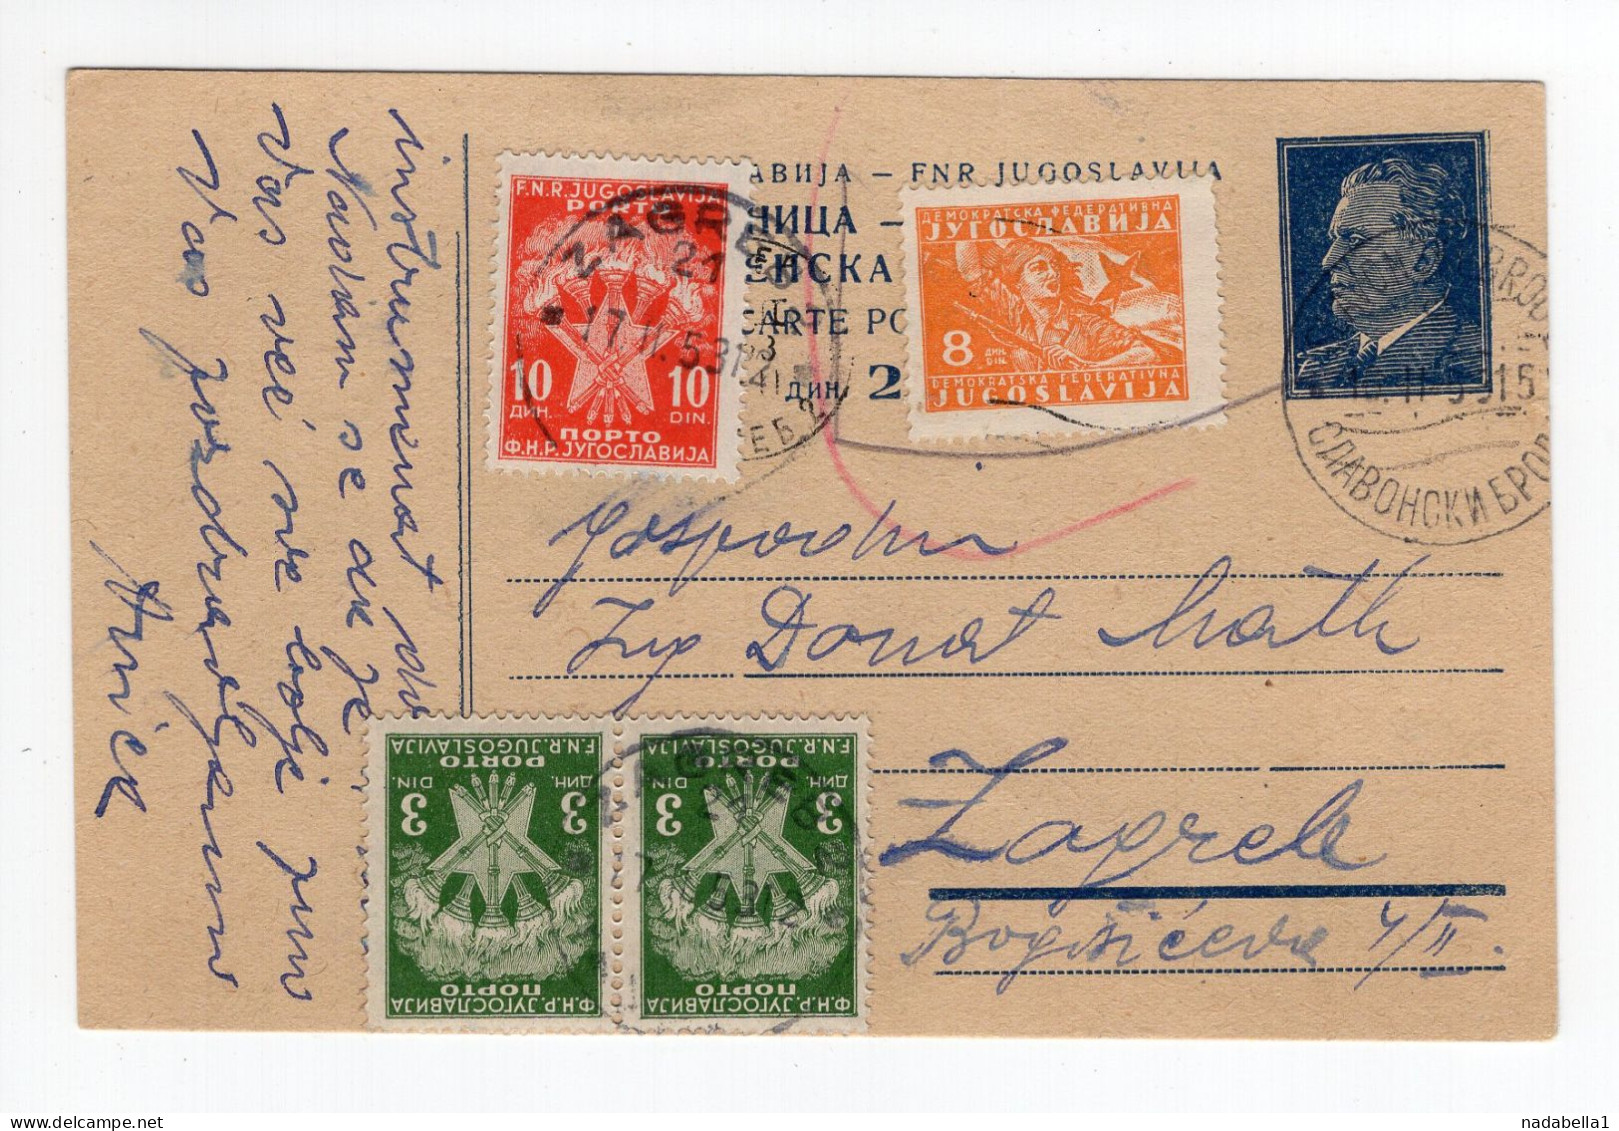 1953. YUGOSLAVIA,CROATIA,SLAVONSKI BROD,STATIONERY CARD,USED,POSTAGE DUE IN ZAGREB - Segnatasse